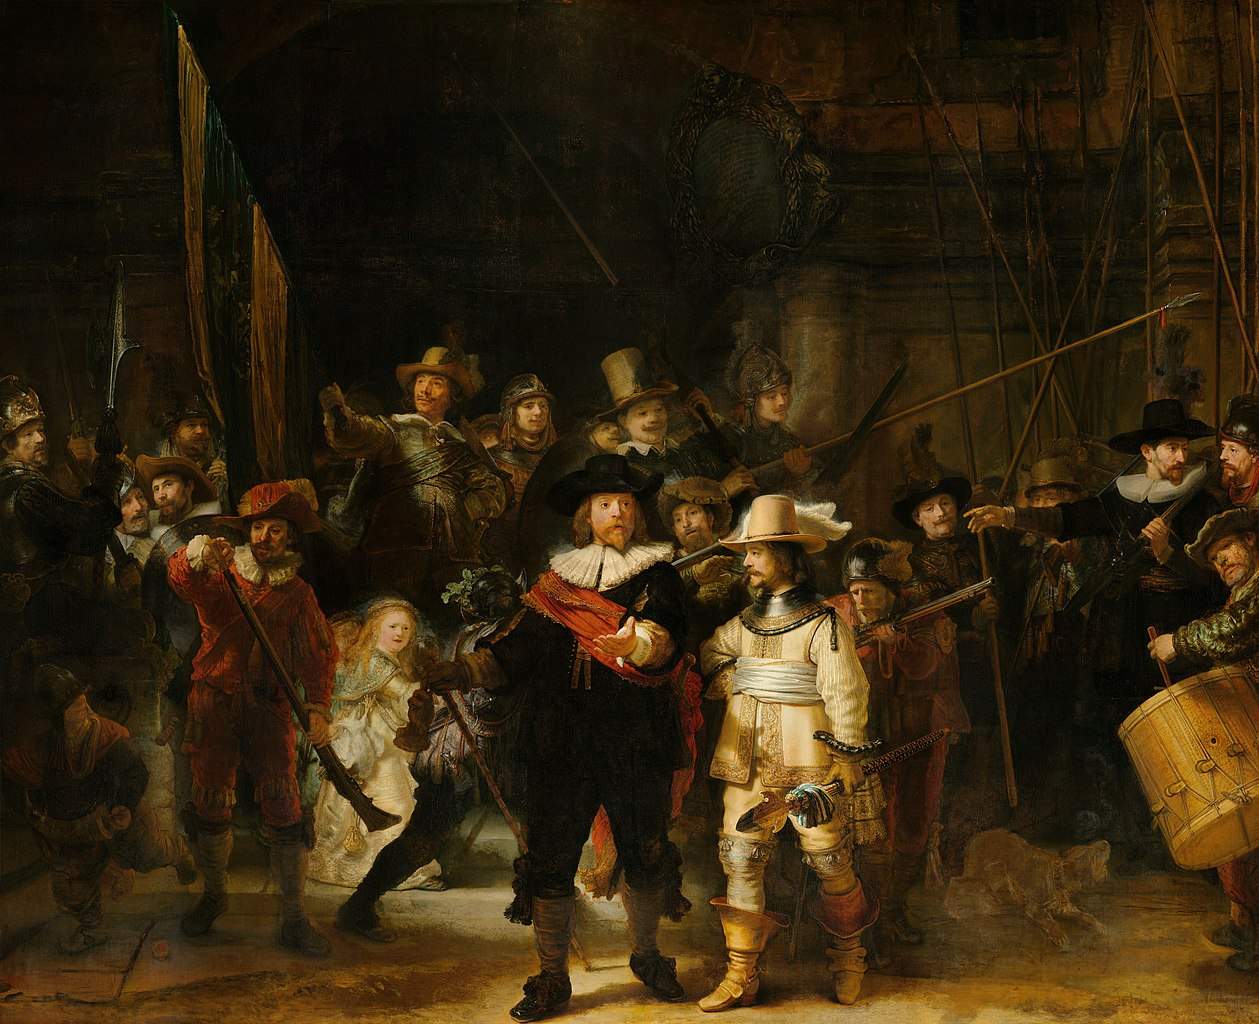 La Veille de nuit de Rembrandt comme jamais vue auparavant : la photo la plus détaillée jamais mise en ligne